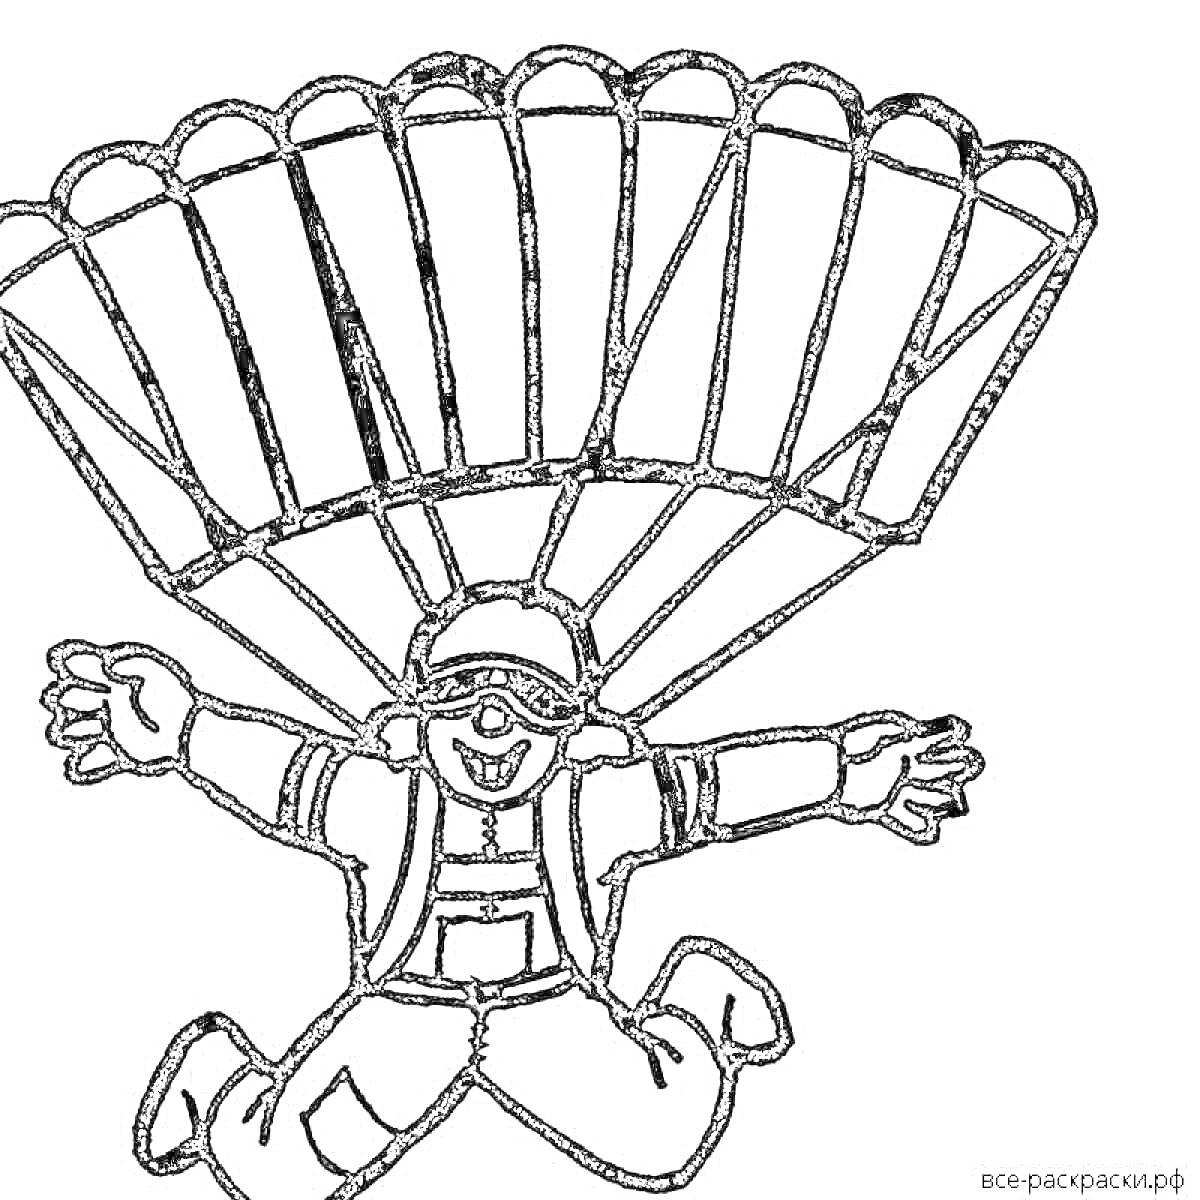 Раскраска Раскраска парашютист. Человек с парашютом, одет в очки и шлем, в свободном падении